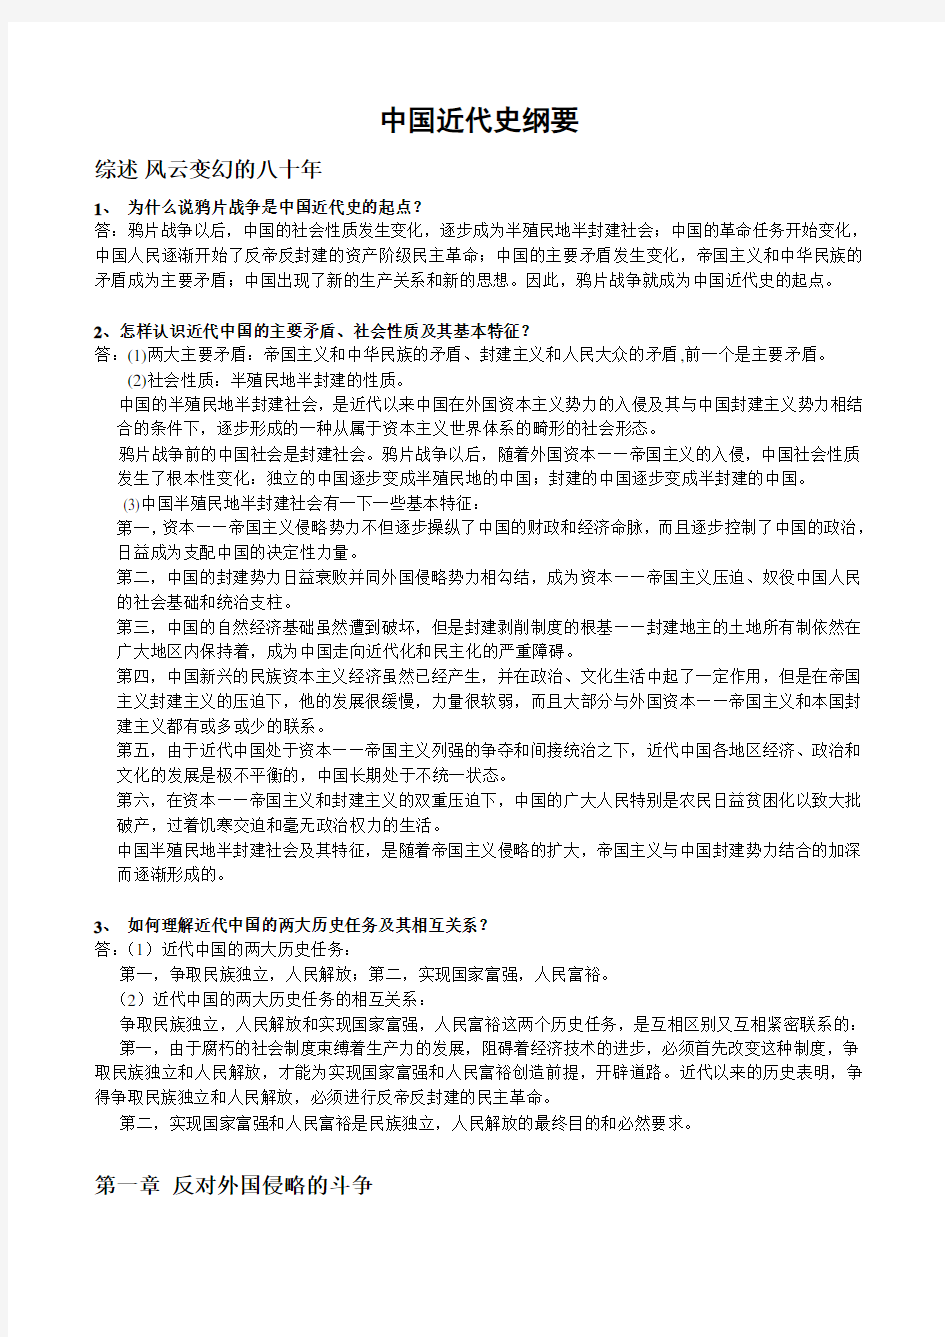 中国近现代史纲要课后习题答案(2015年修订版)